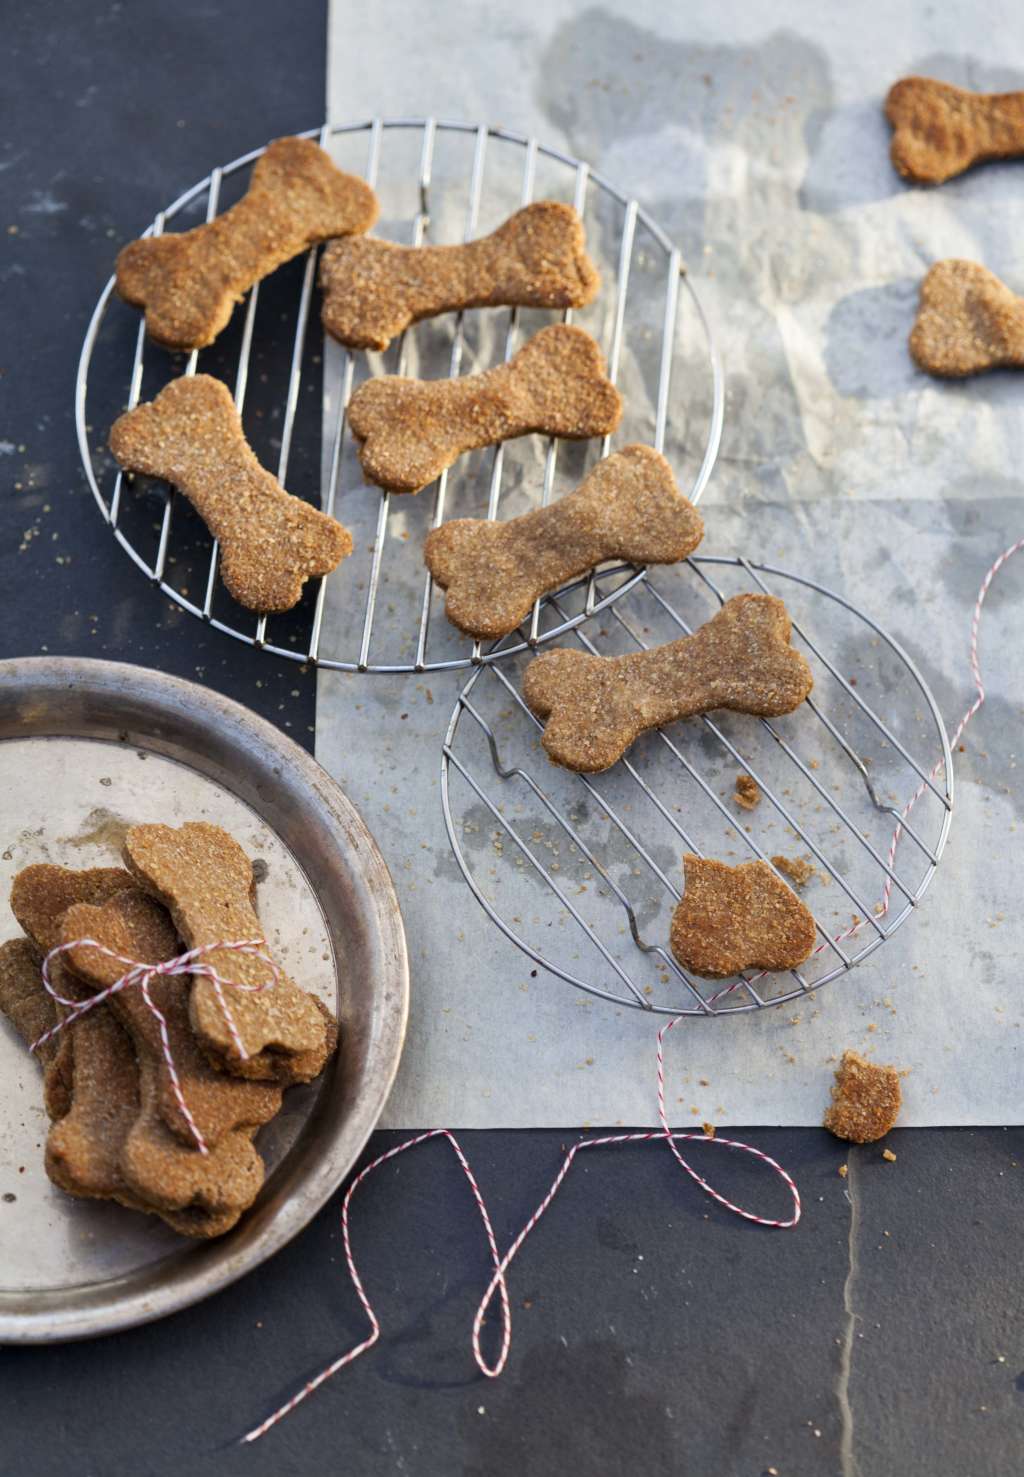 20 HQ Photos Cat Treat Recipes No Tuna / 10 Homemade Dog Treat Recipes Your Dog Will Love - Tidy ...